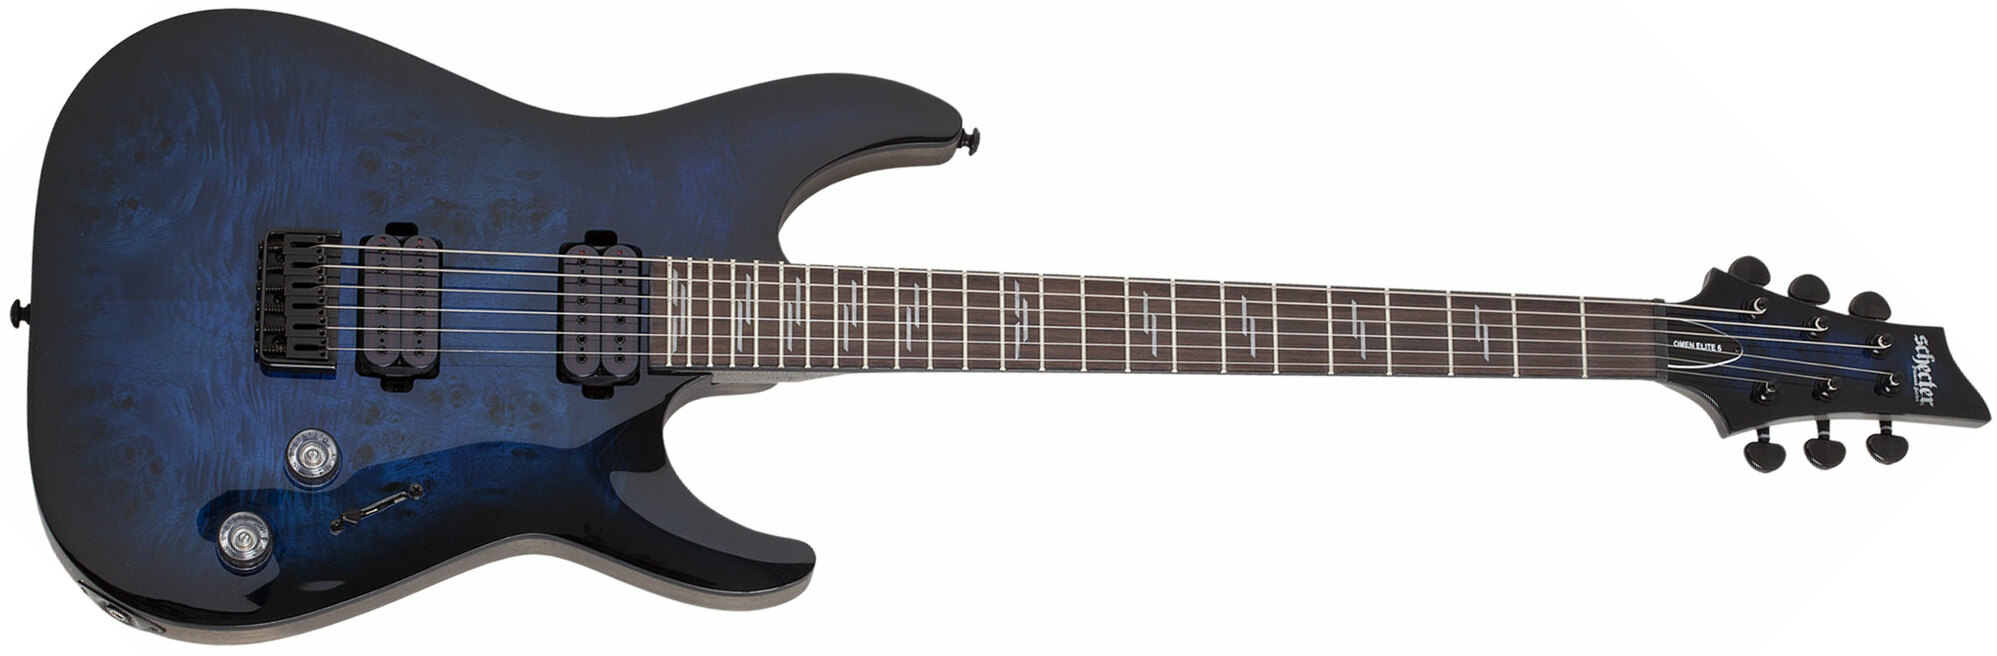 Schecter Omen Elite-6 2h Ht Rw - See Thru Blueburst - Str shape electric guitar - Main picture